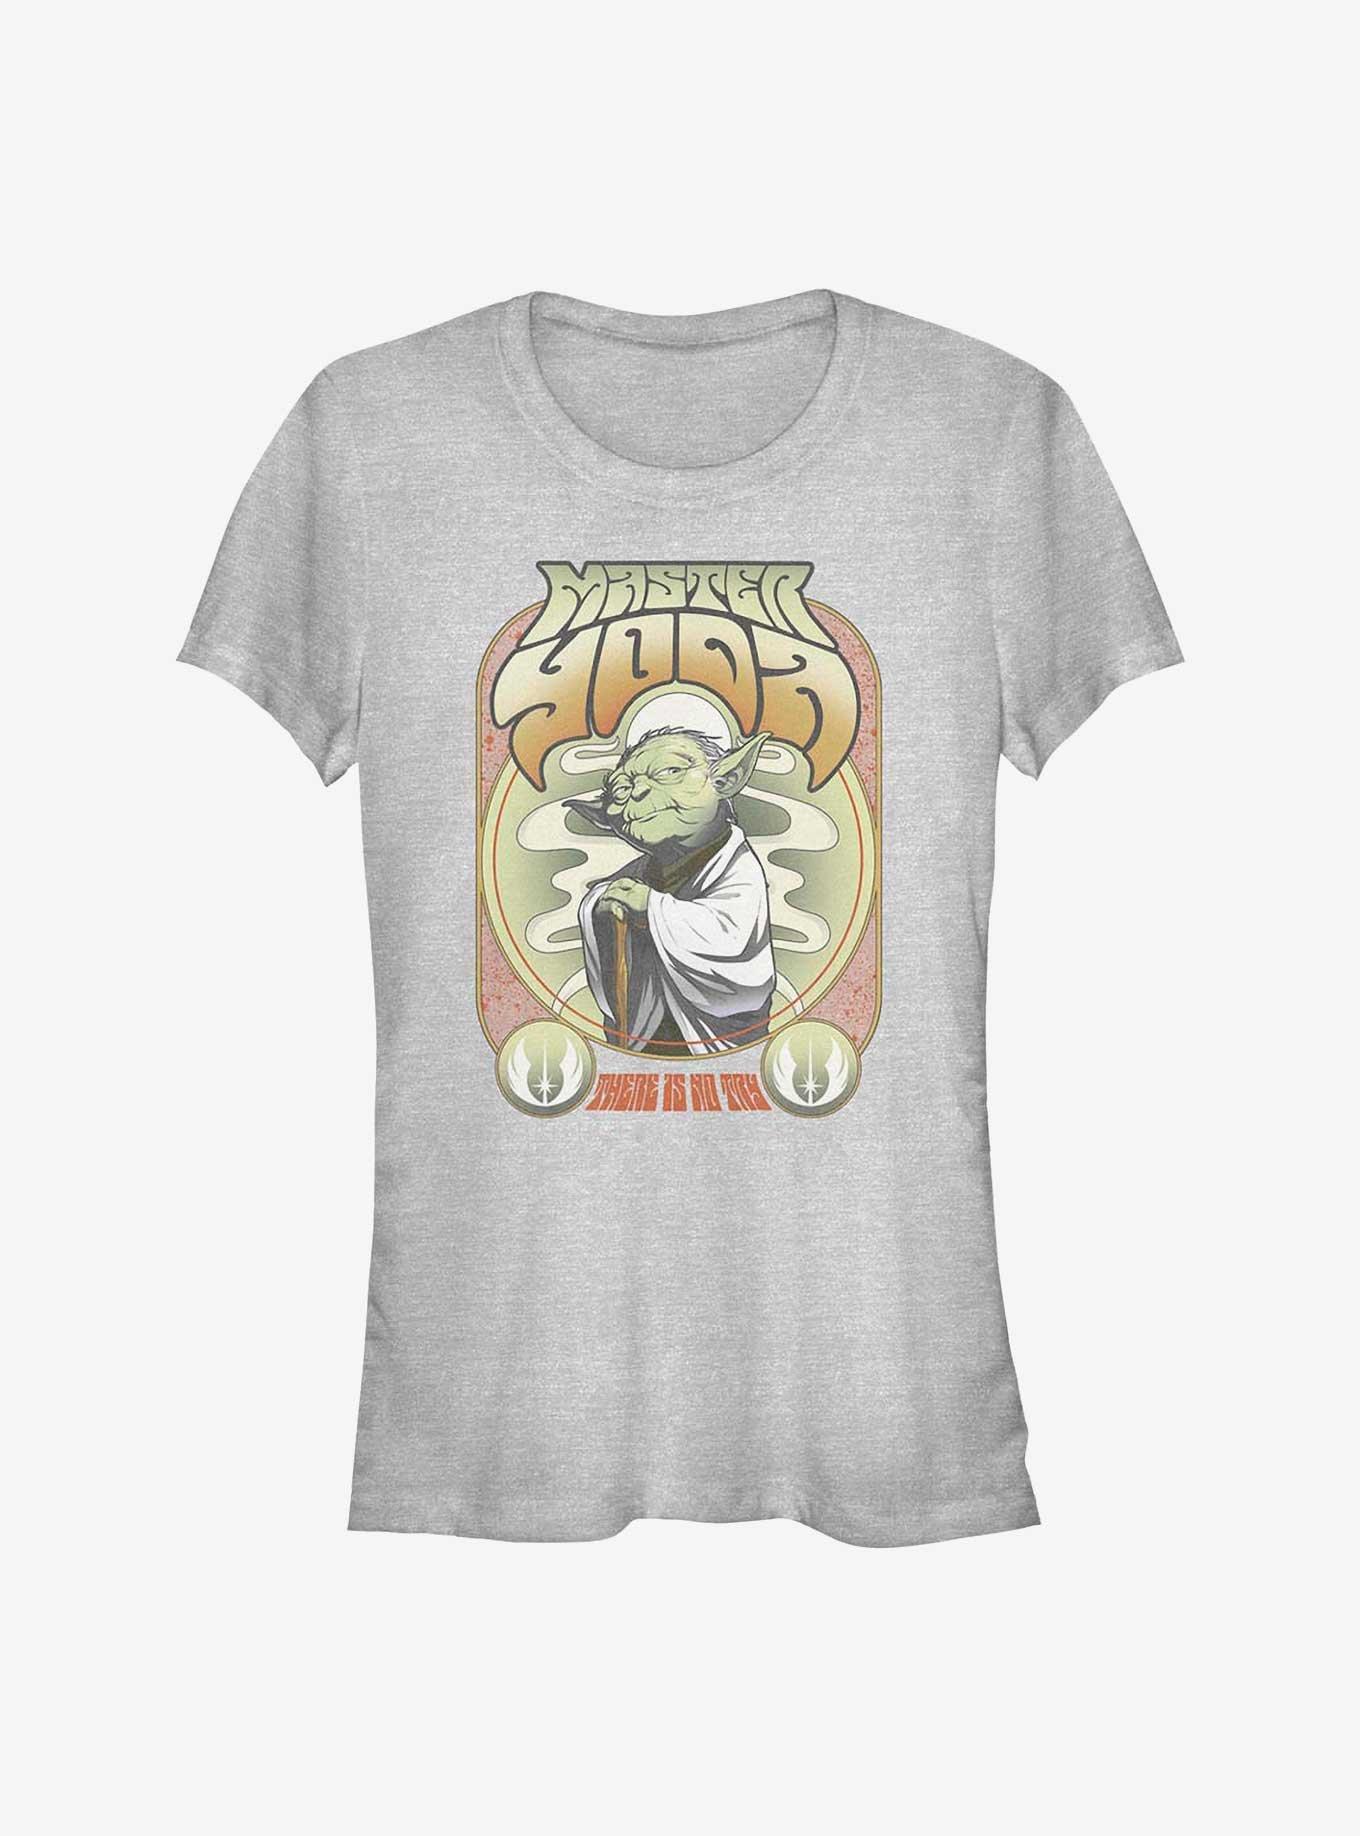 Star Wars Master Yoda Girls T-Shirt